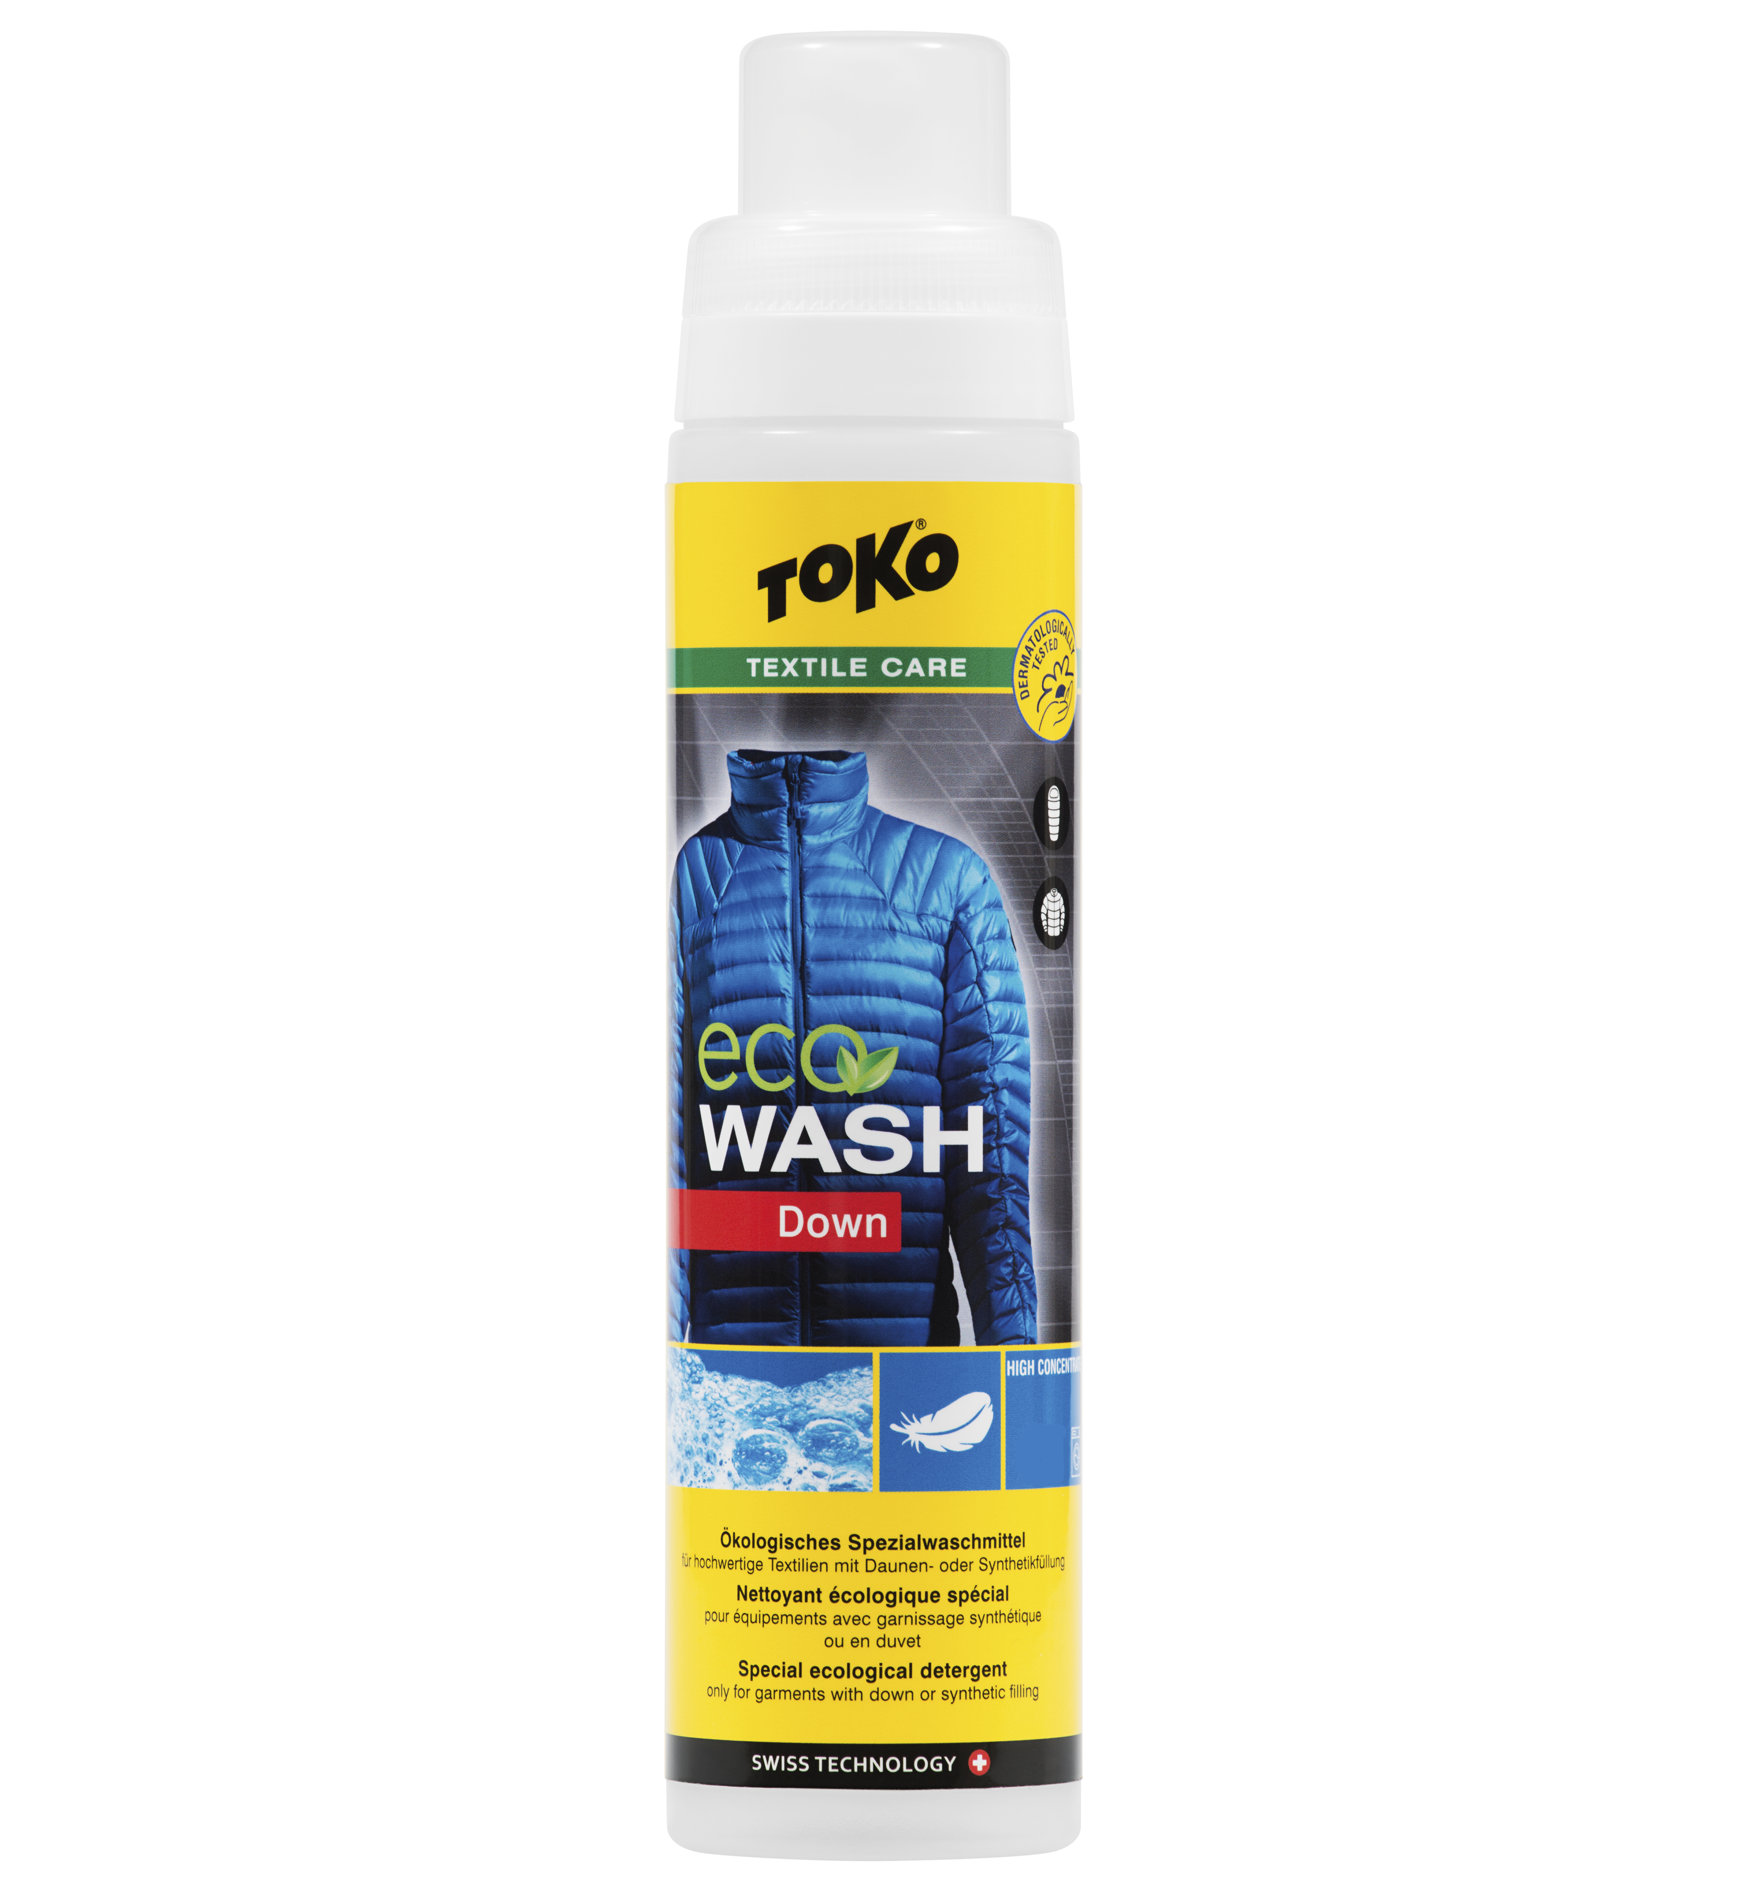 Toko Eco Down Wash 250 ml Spezialwaschmittel